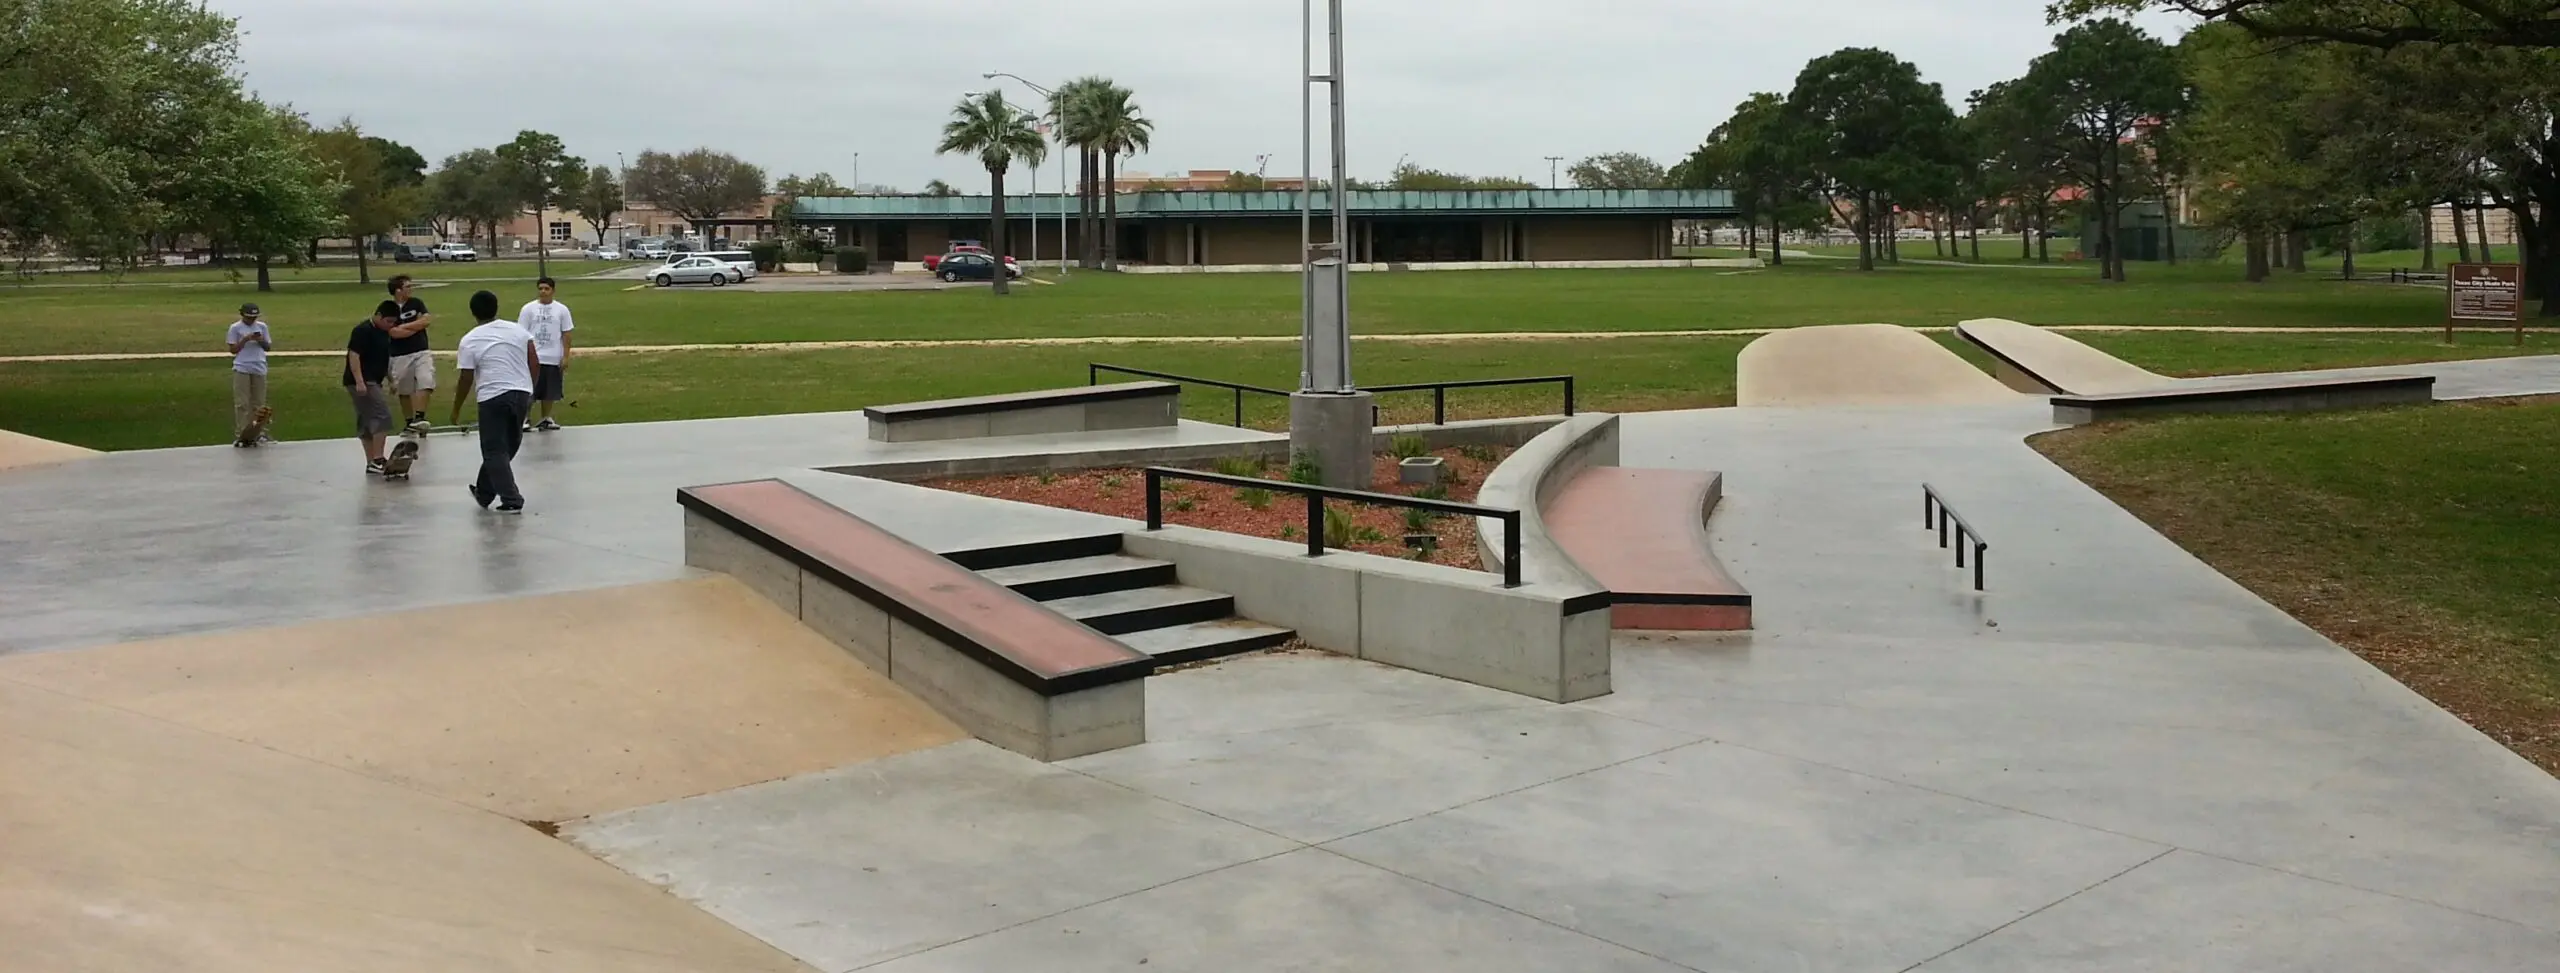 SPA Skateparks City of Texas City Skate Park 2 2 scaled